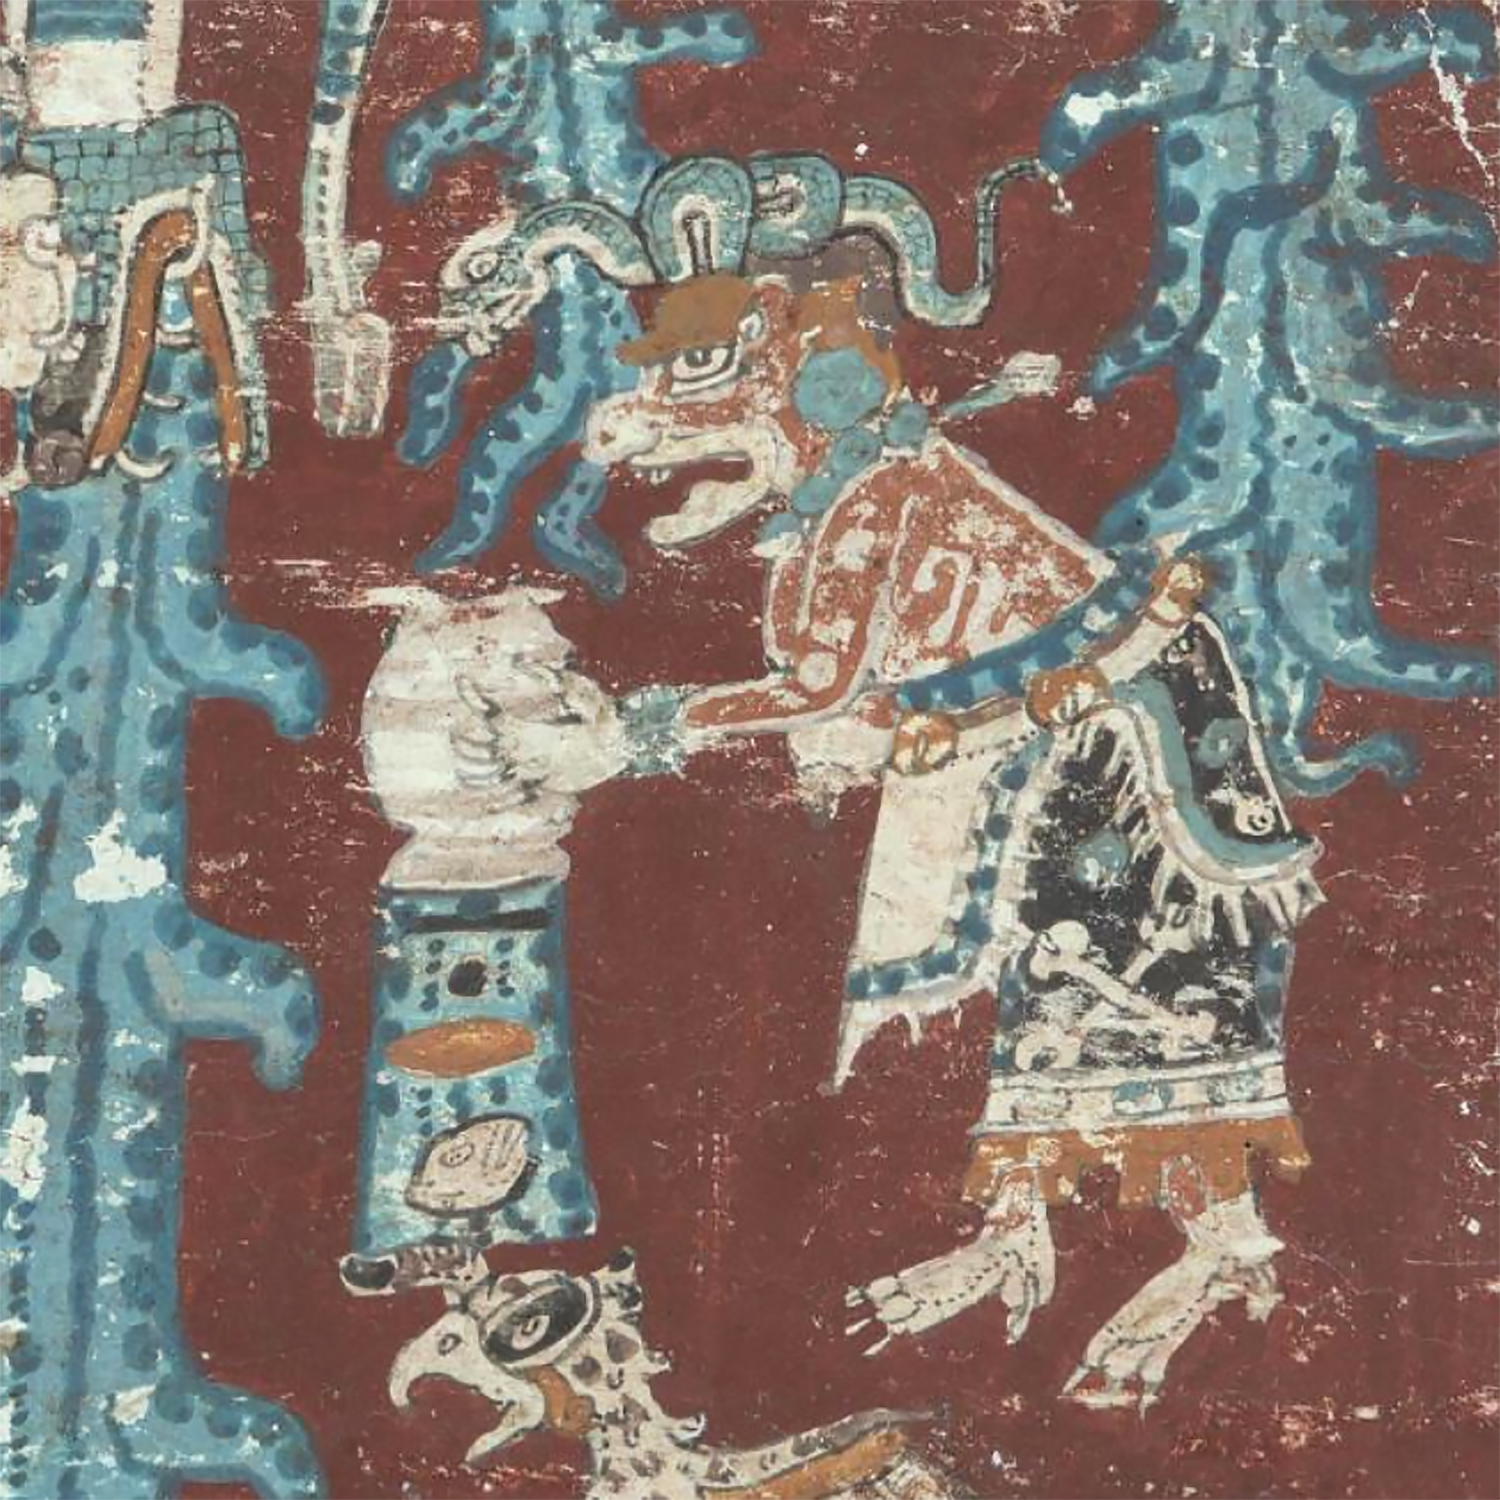 Иш-чель переворачивает сосуд с водой, что, вероятно, символизирует великий потоп. Дрезденский кодекс. Майя, 13-14 вв. н.э. Коллекция Saxon State and University Library, Дрезден.